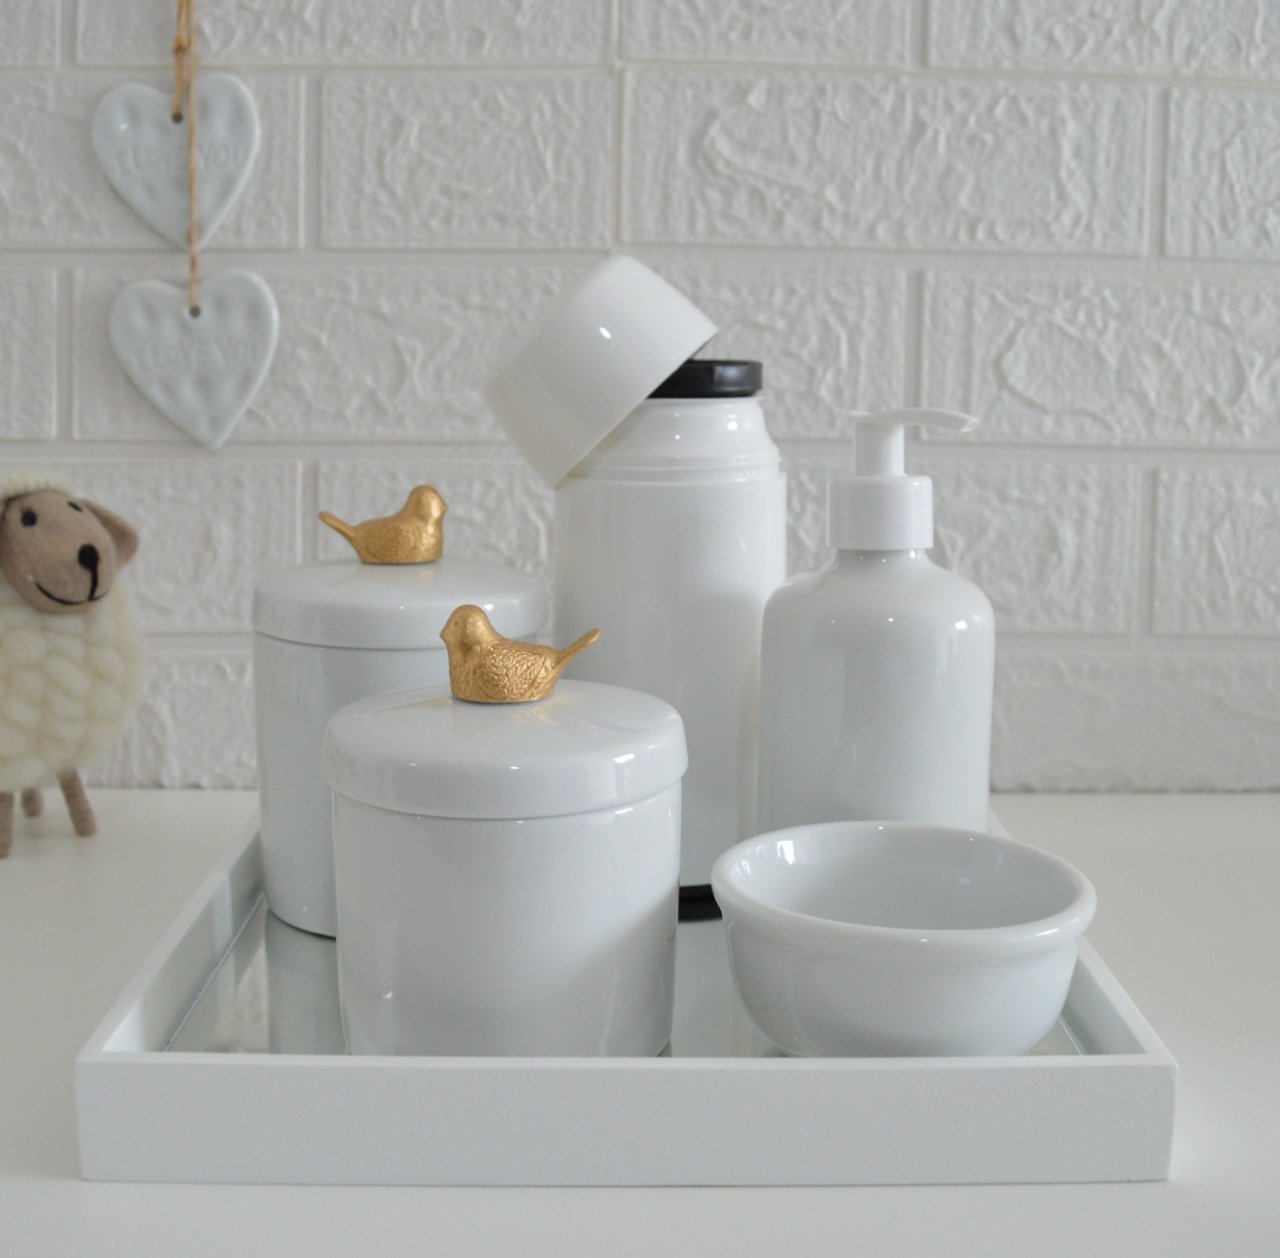 Kit Higiene Potes Porcelana + Bandeja Espelhada + Termica 250ml Apliques em Resina Pássaro Dourado. - 1